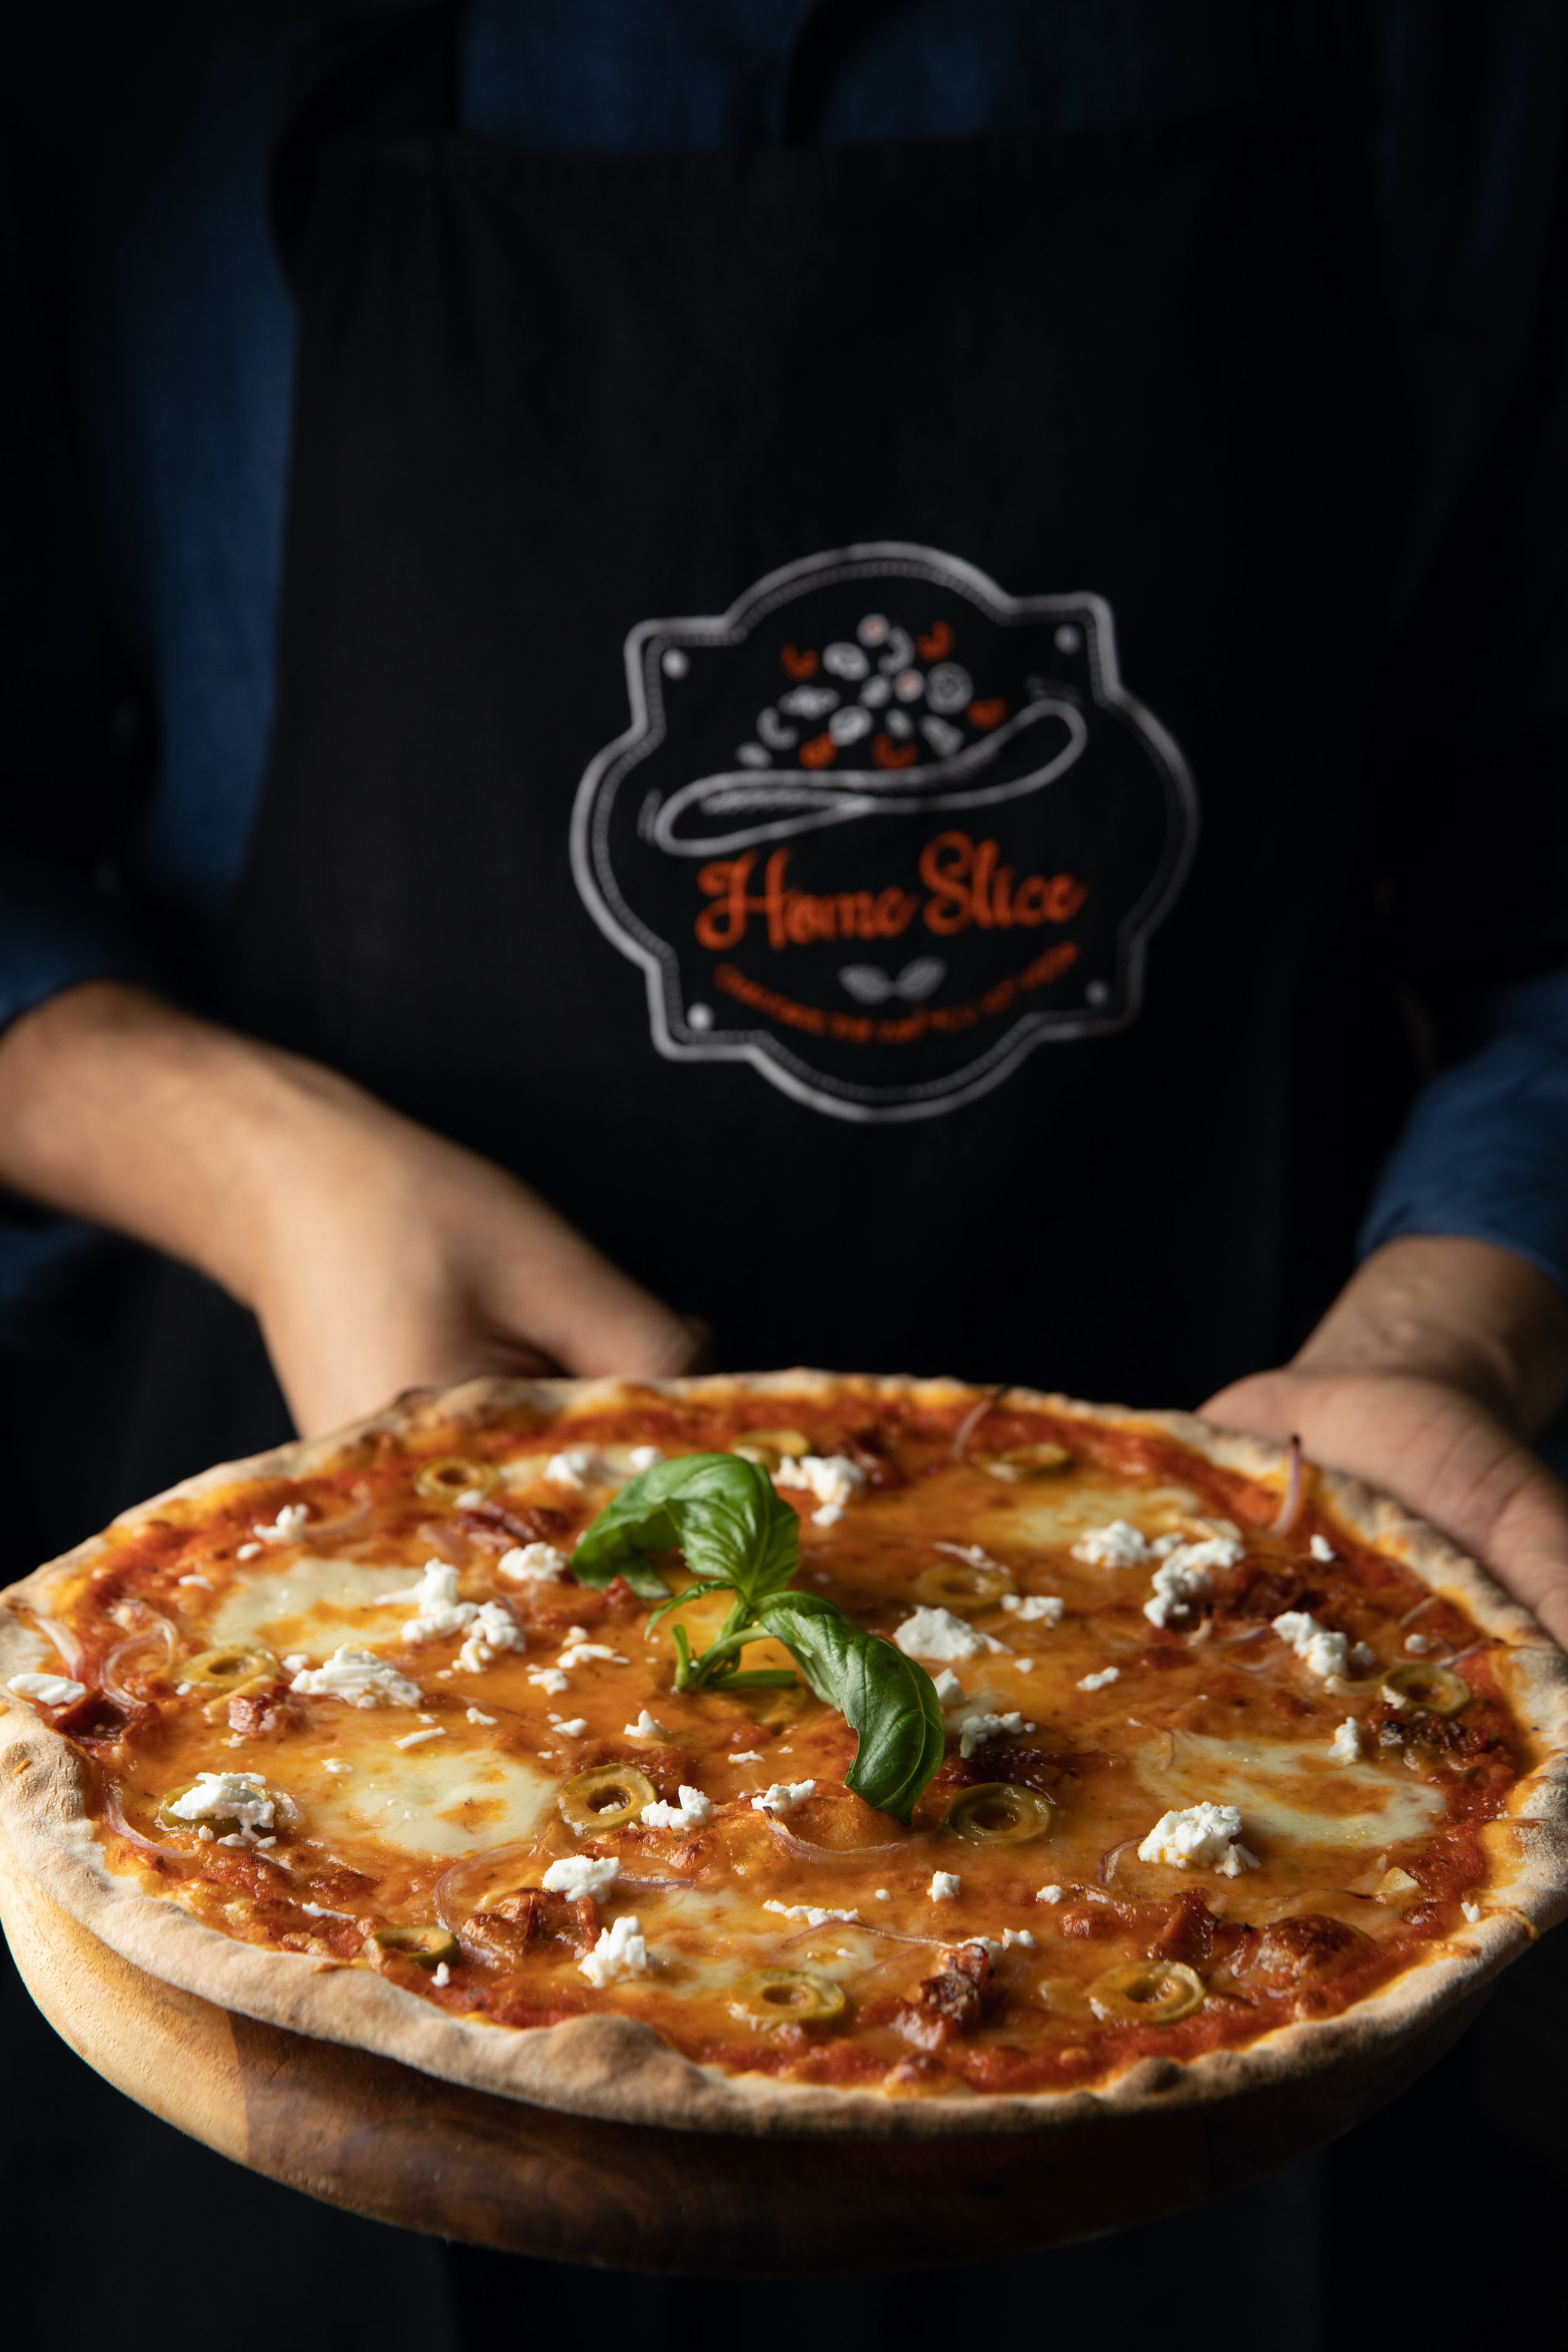 Homeslice Original pizza